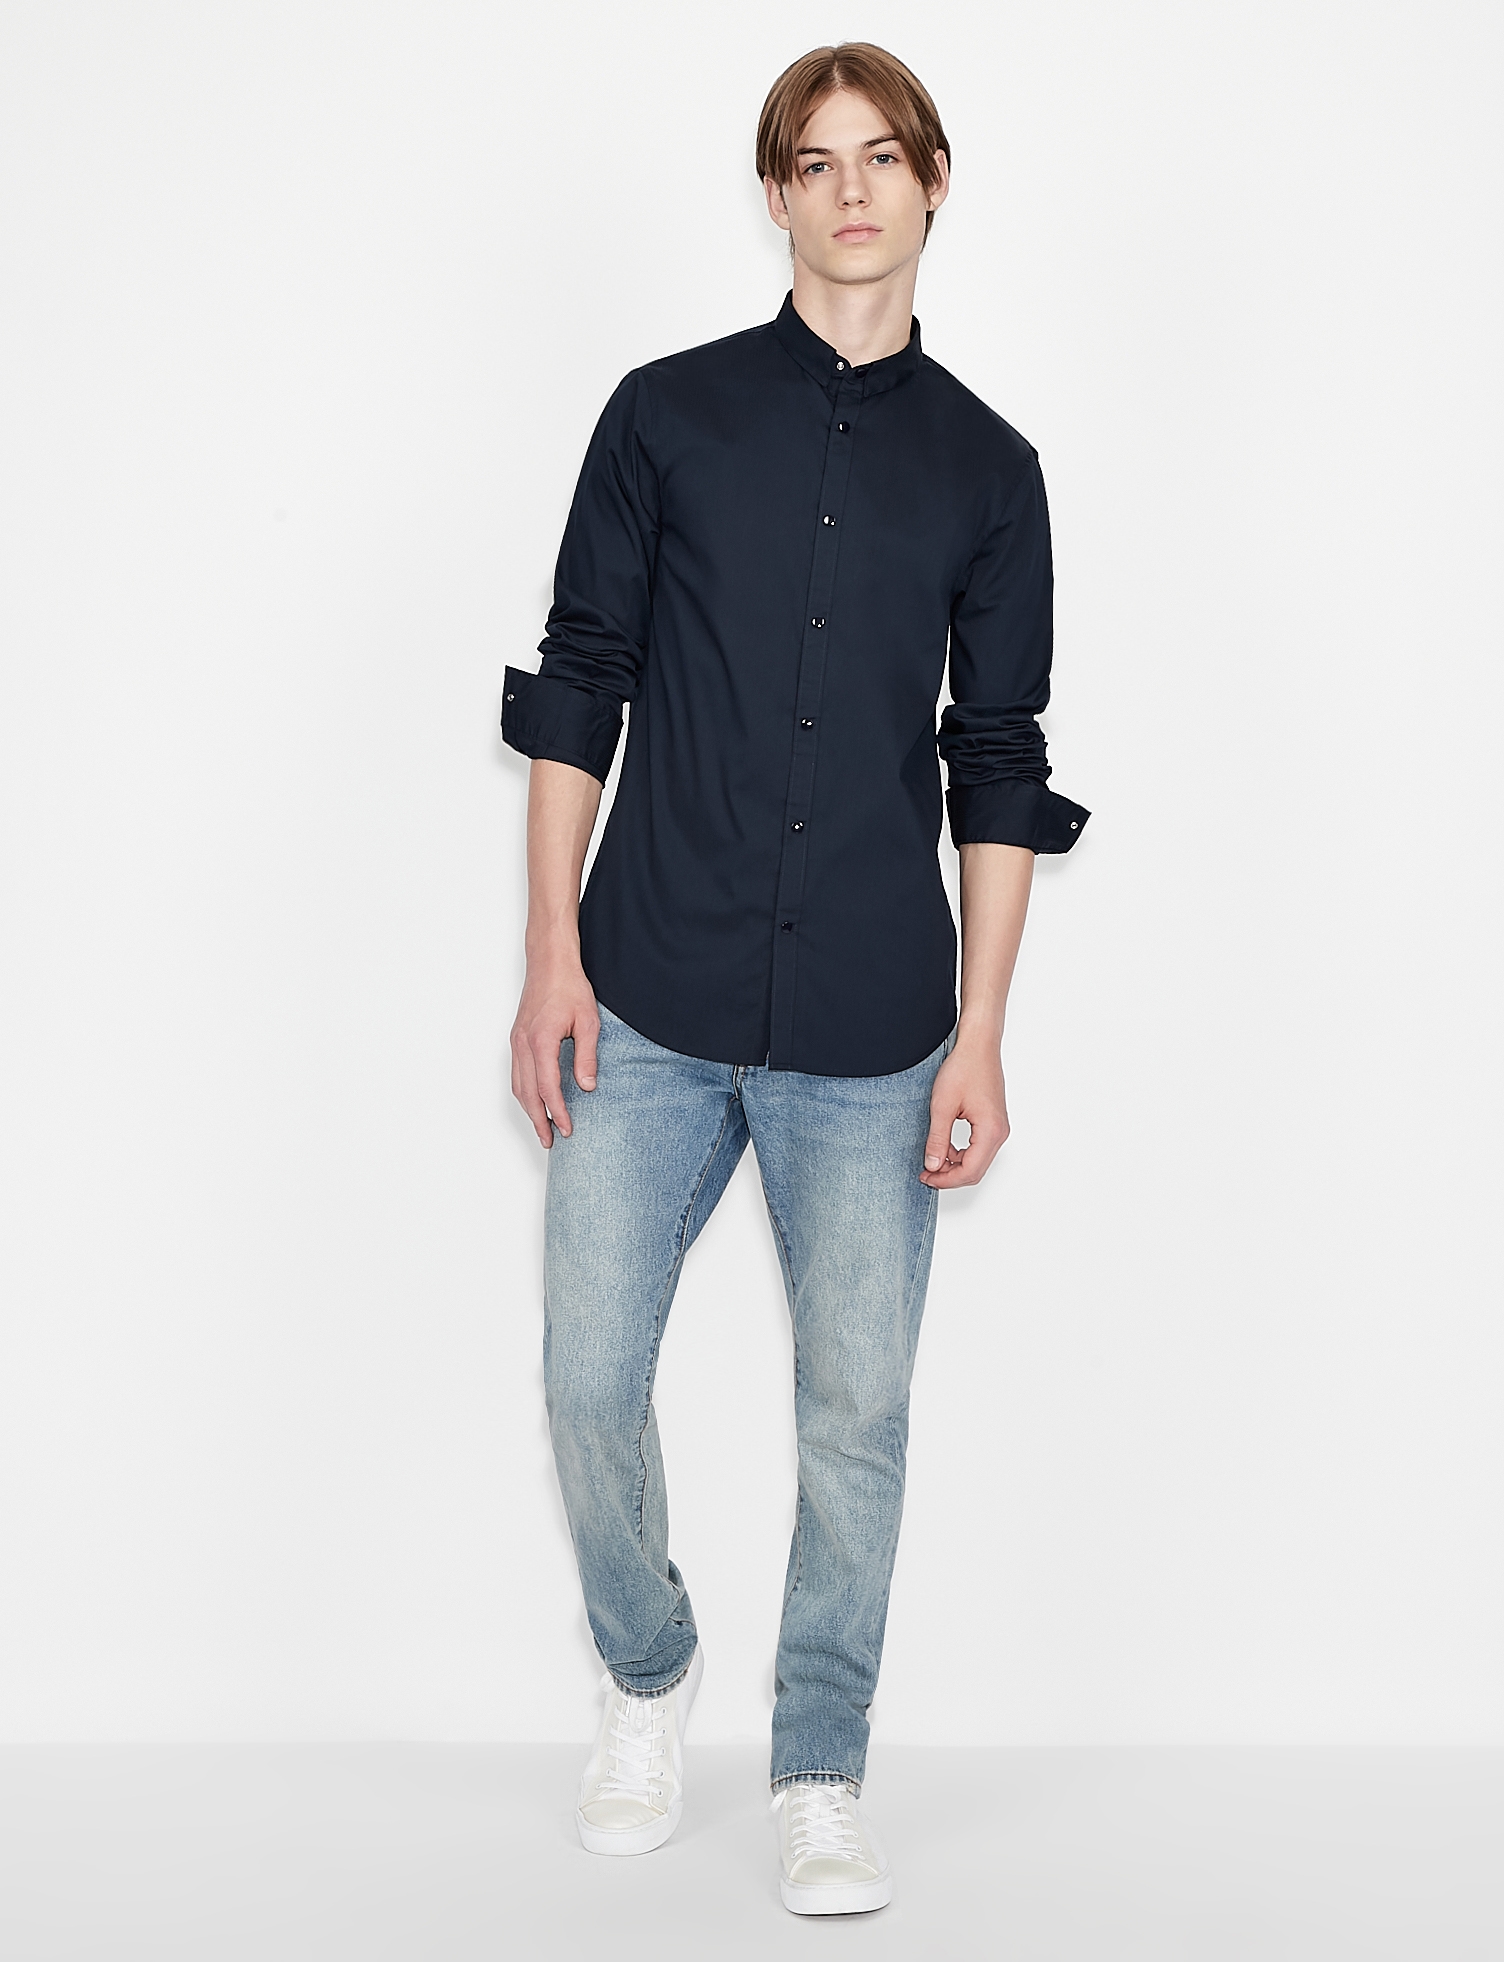 Buy Men Black Slim Fit Print Full Sleeves Casual Shirt Online - 681598 |  Peter England